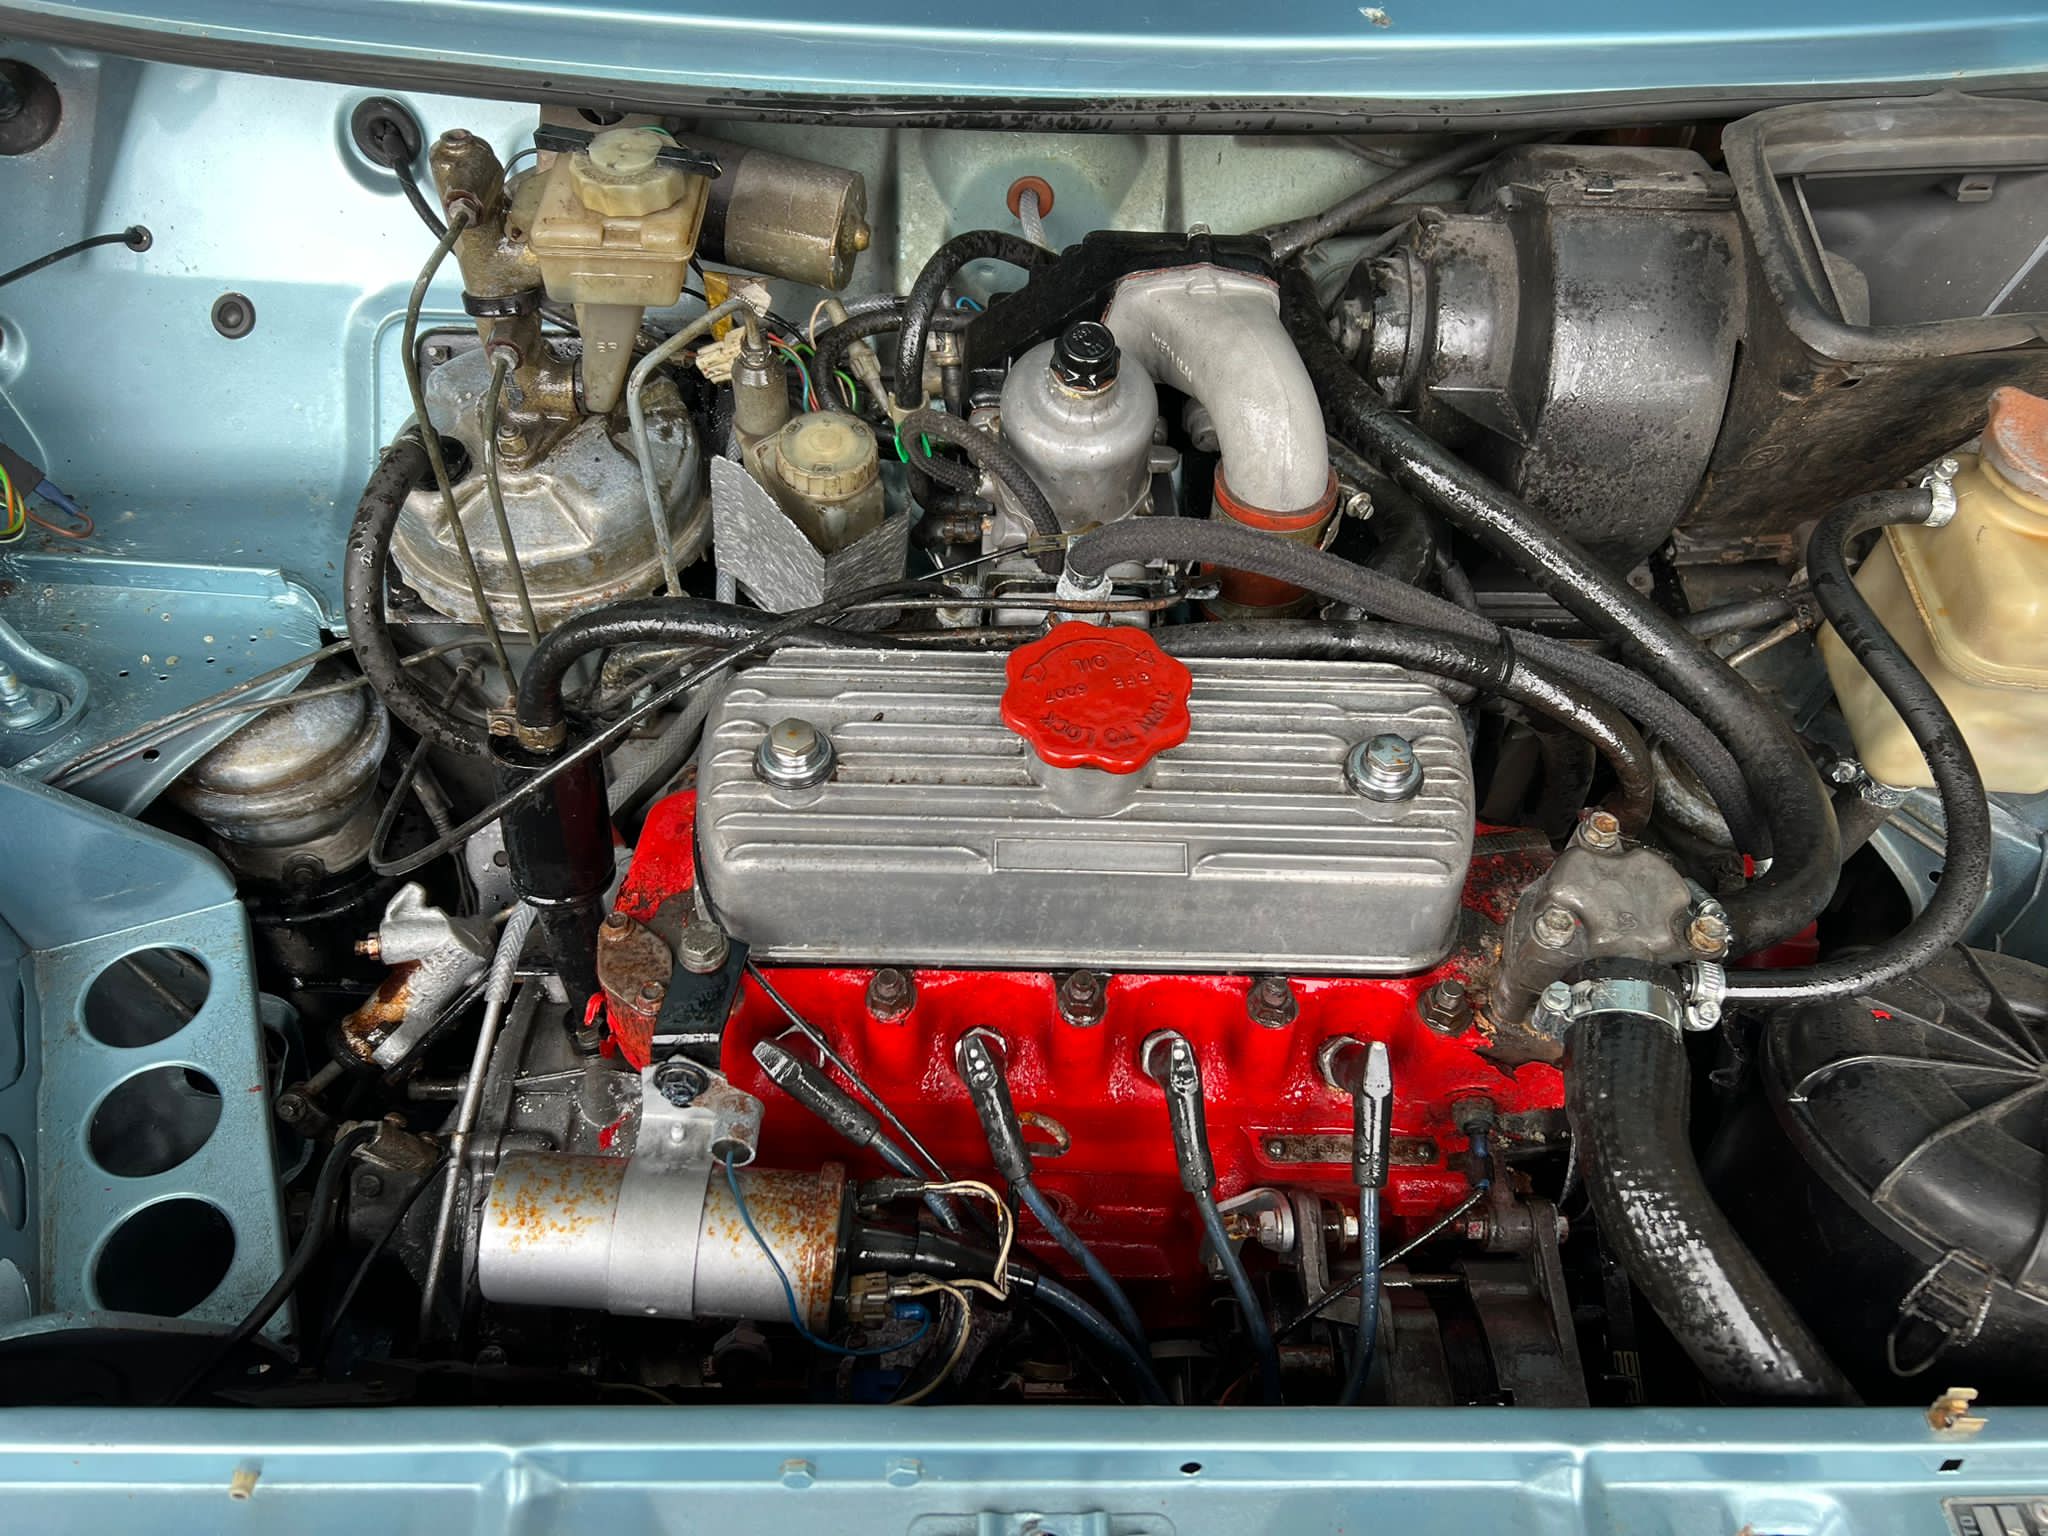 MG Metro Turbo 1984 - Image 14 of 15